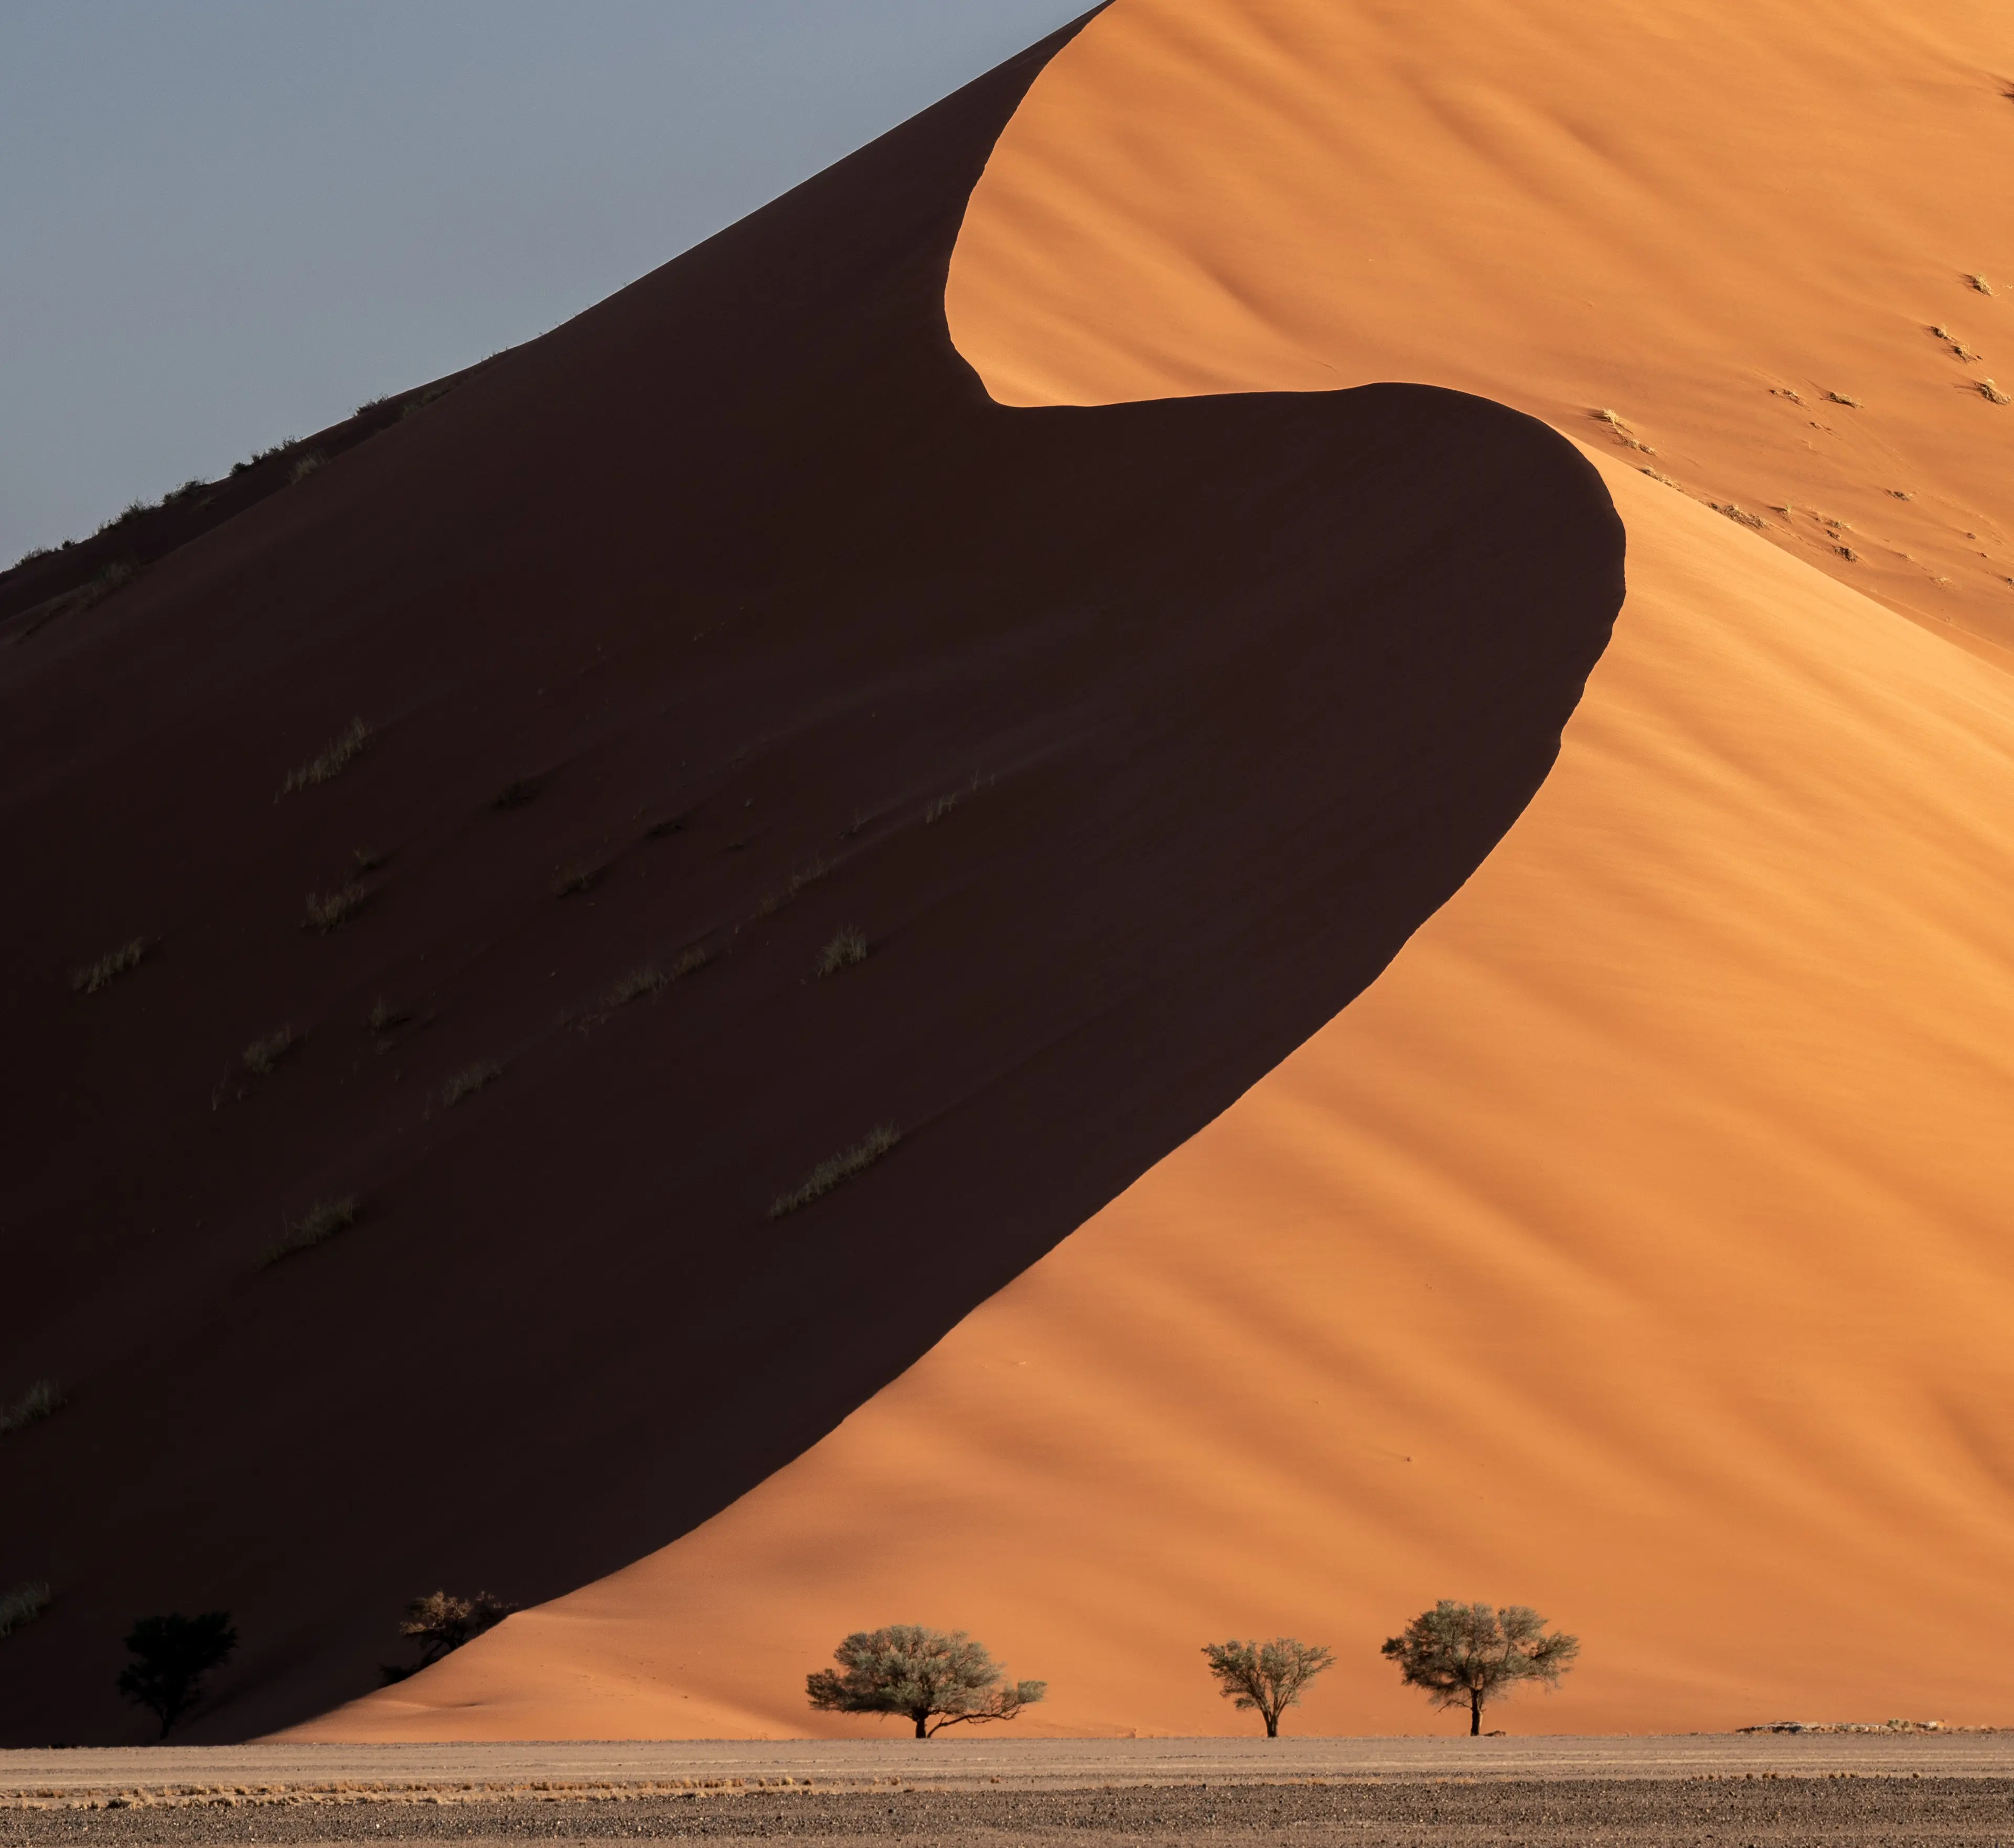 The Namib Desert, the oldest desert in the world